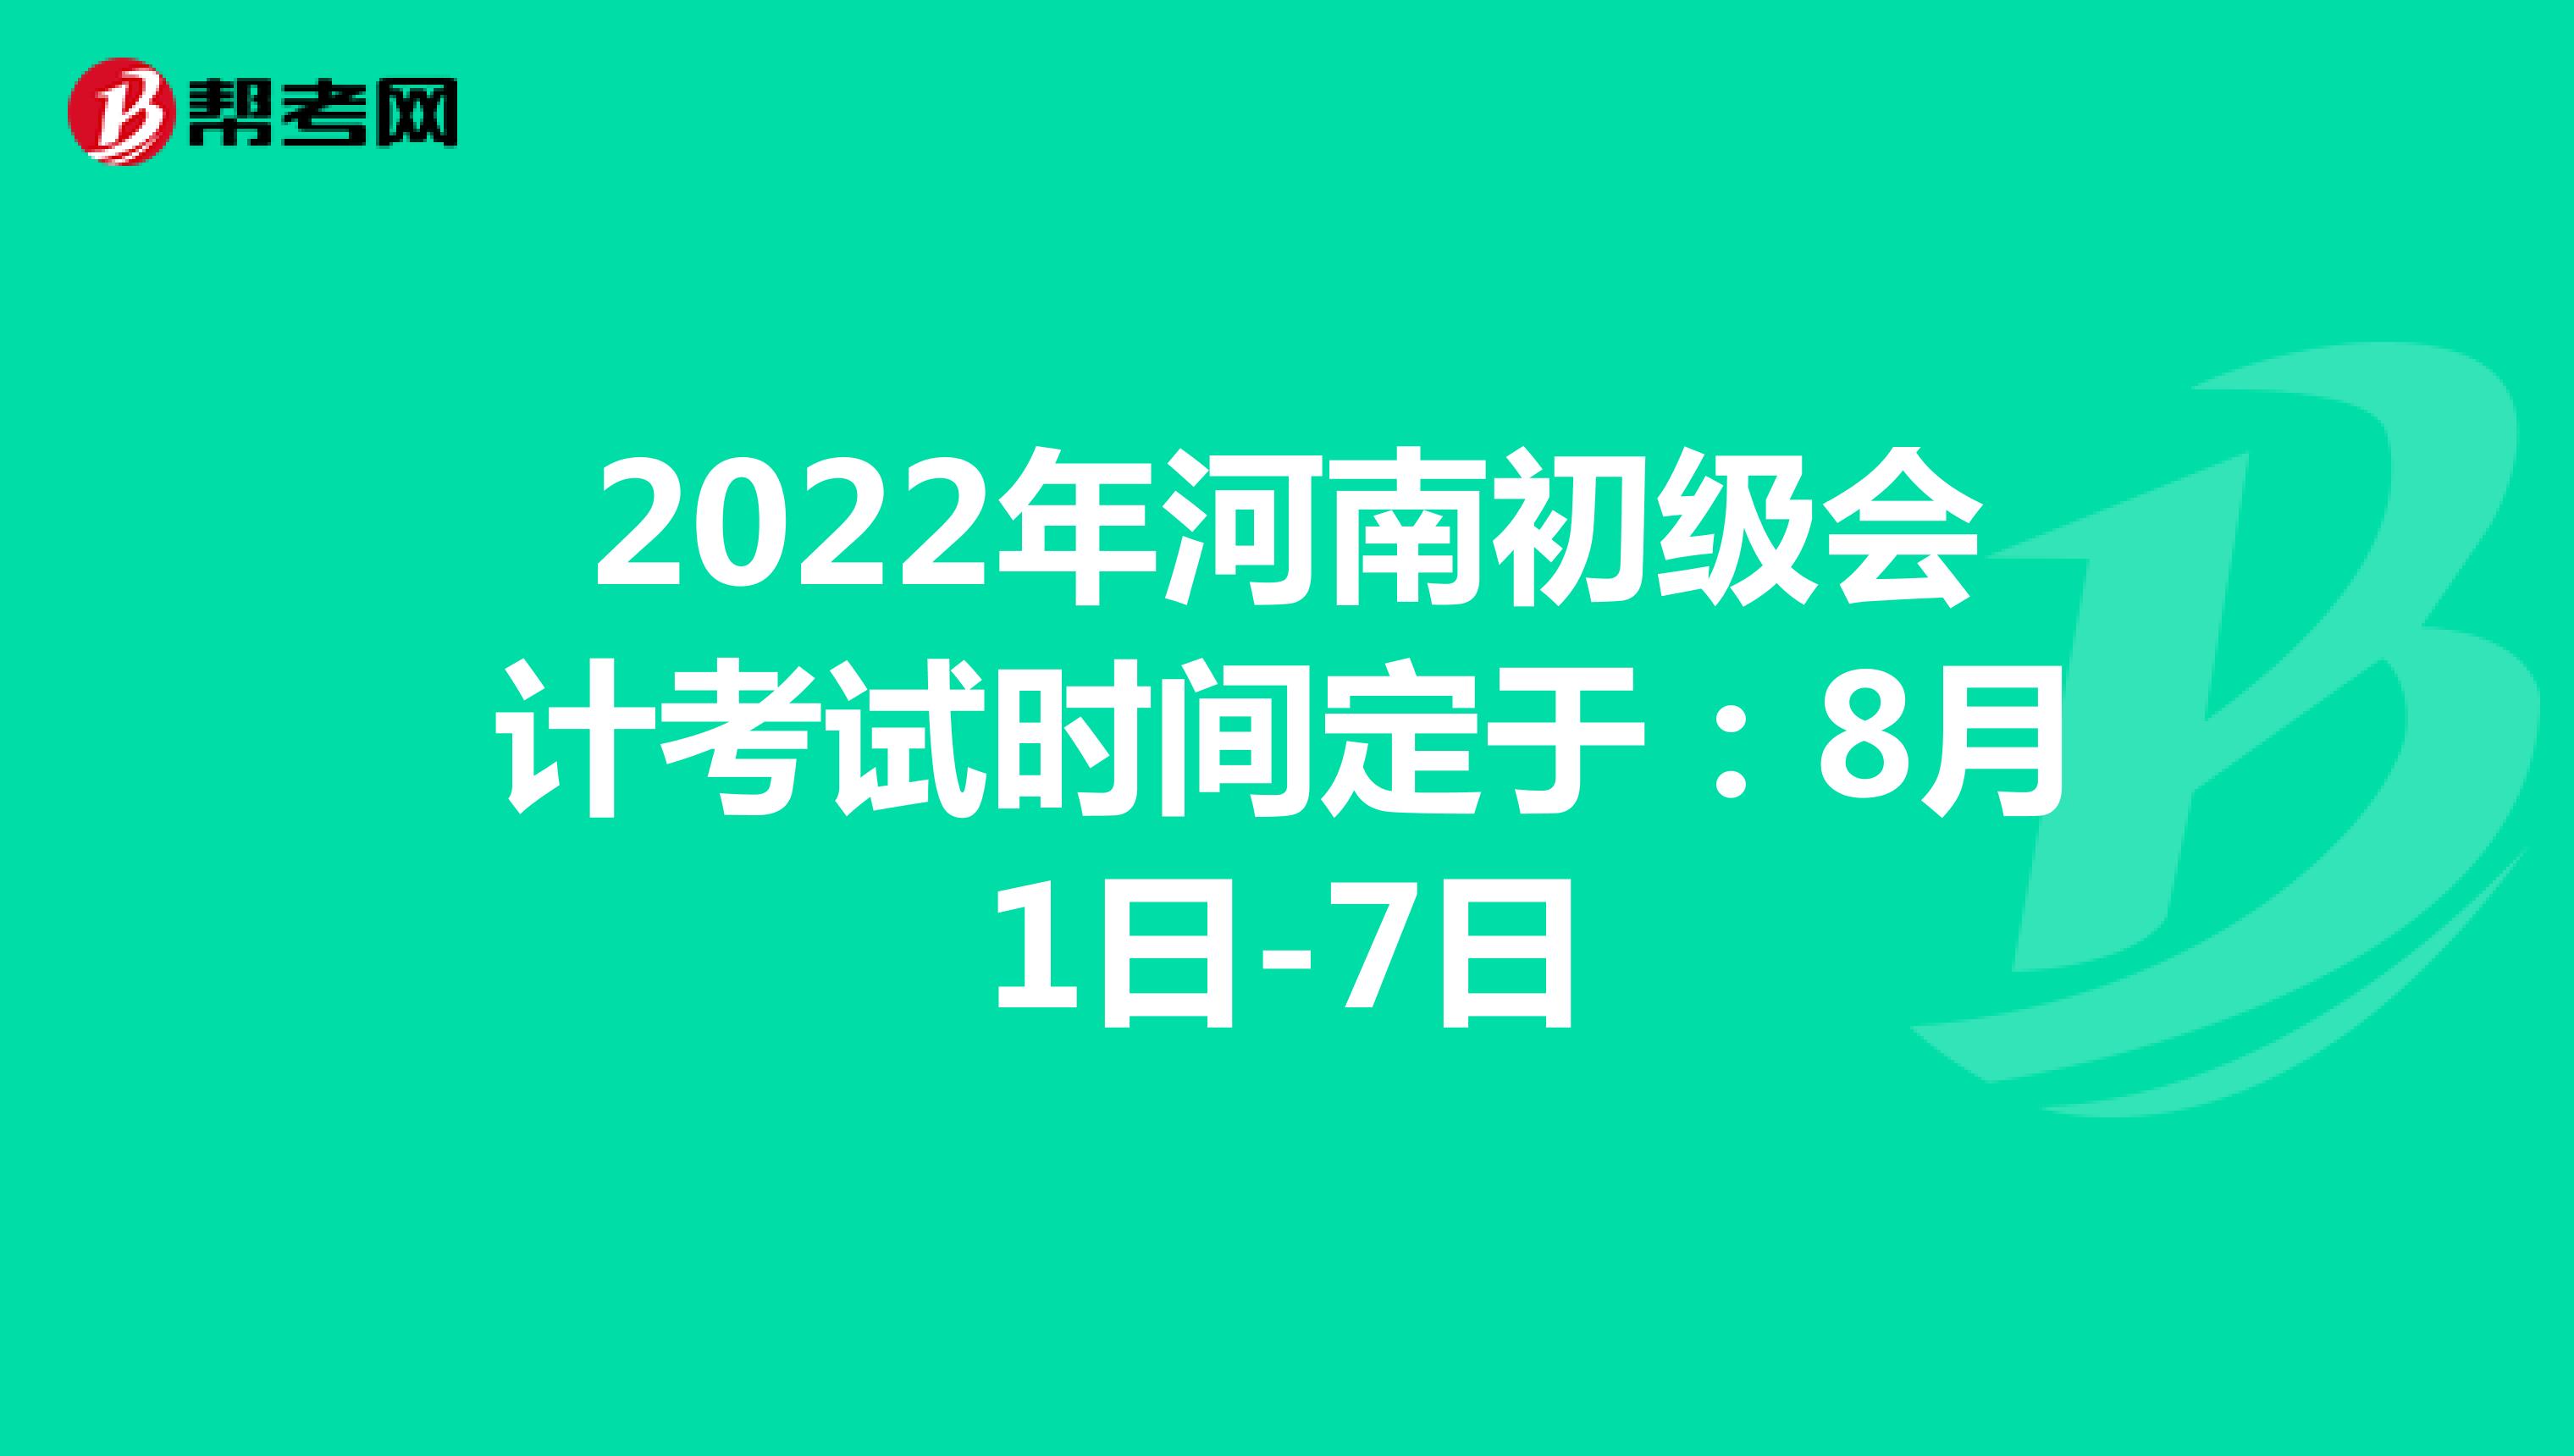 2022年河南初级会计考试时间定于：8月1日-7日